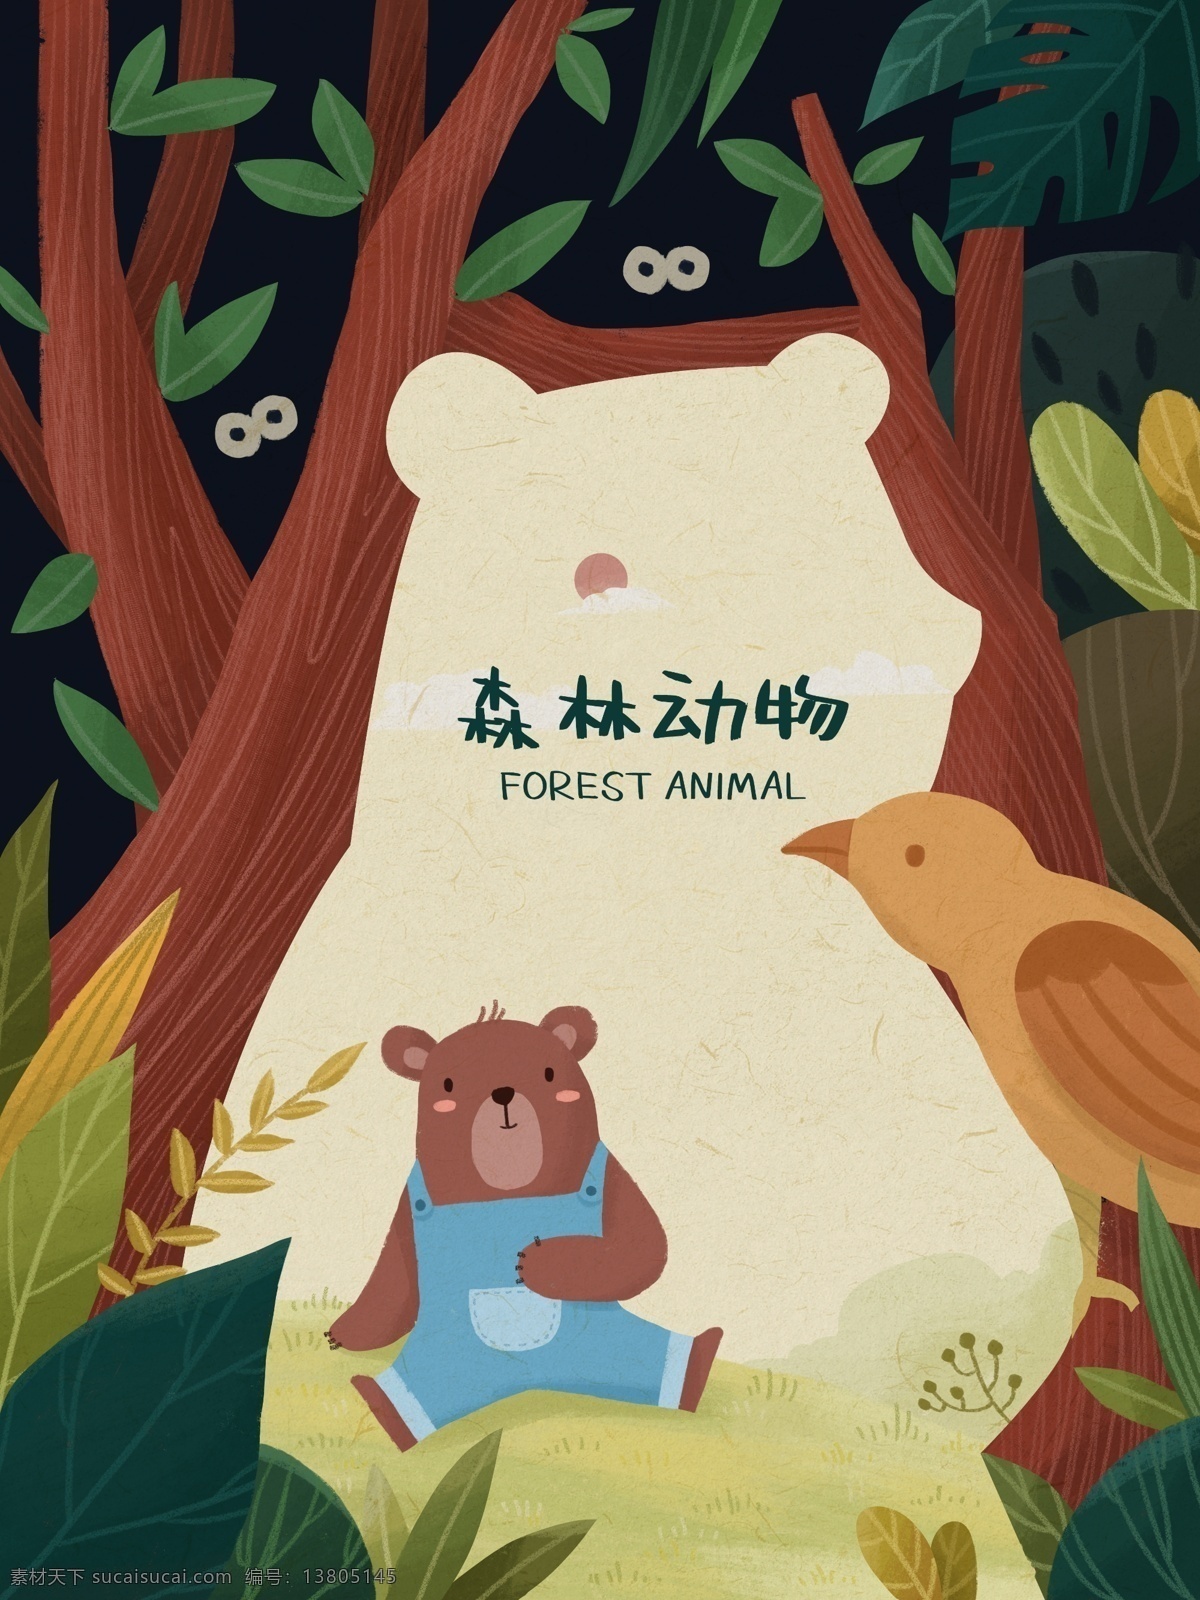 正负 定义 森林 动物 小 熊 植物 鸟 插画 正负定义 森林动物 小熊